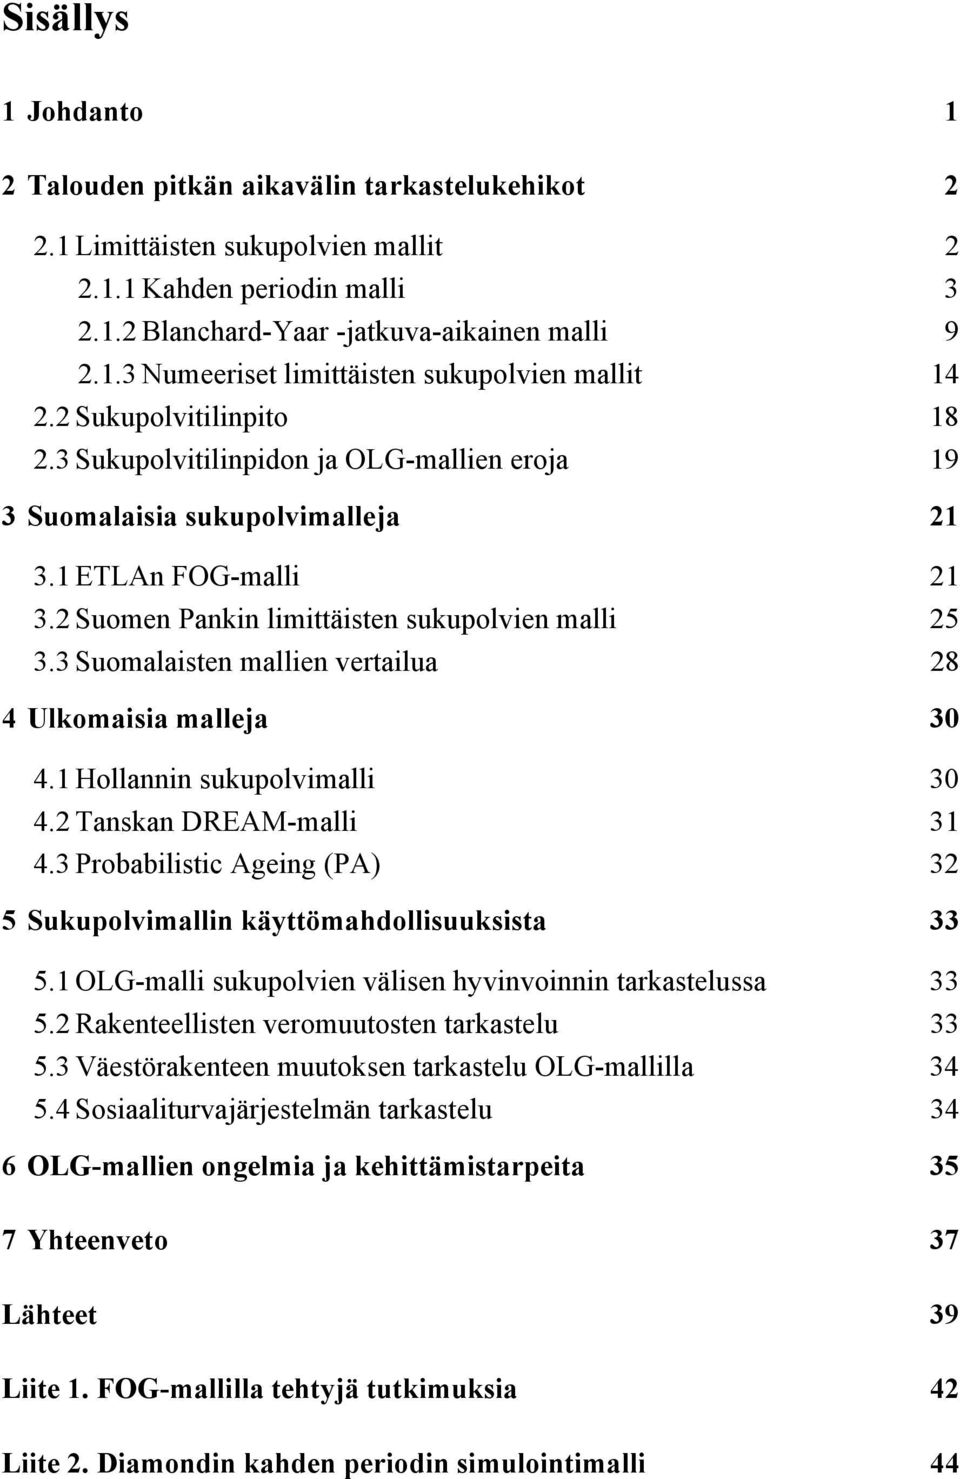 3 Suomalaisen mallien verailua 28 4 Ulkomaisia malleja 30 4.1 Hollannin sukupolvimalli 30 4.2 Tanskan DREAM-malli 31 4.3 Probabilisic Ageing (PA) 32 5 Sukupolvimallin käyömahdollisuuksisa 33 5.